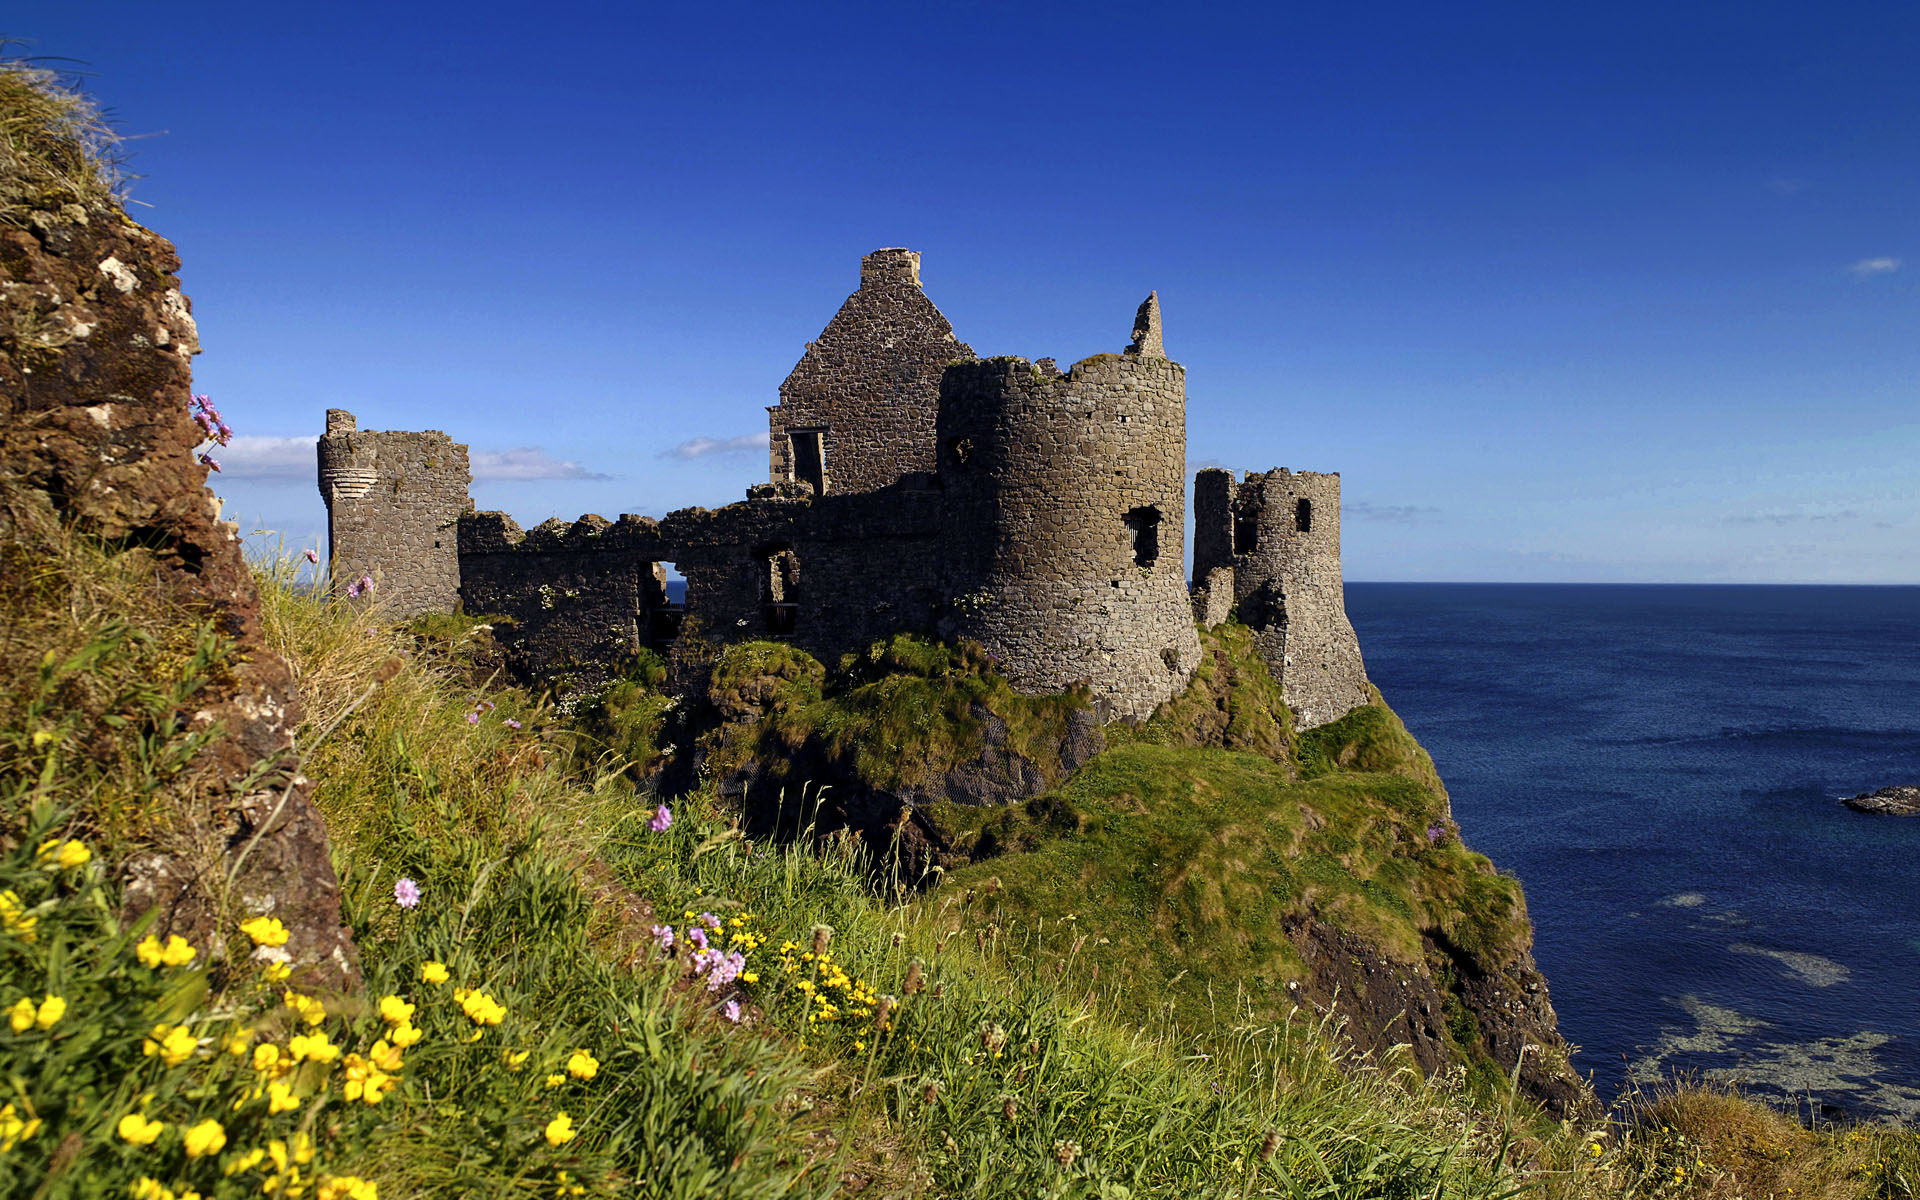 Bức ảnh về lâu đài Dunluce Antrim Bắc Ireland này có lẽ sẽ khiến bạn ngạc nhiên! Mặc dù đã đổ nát và bị phá hủy, lâu đài vẫn giữ được sức hấp dẫn của mình. Hãy thưởng thức cảnh quan tuyệt đẹp của bức ảnh và khám phá về lịch sử và văn hóa độc đáo của Vương quốc Anh.